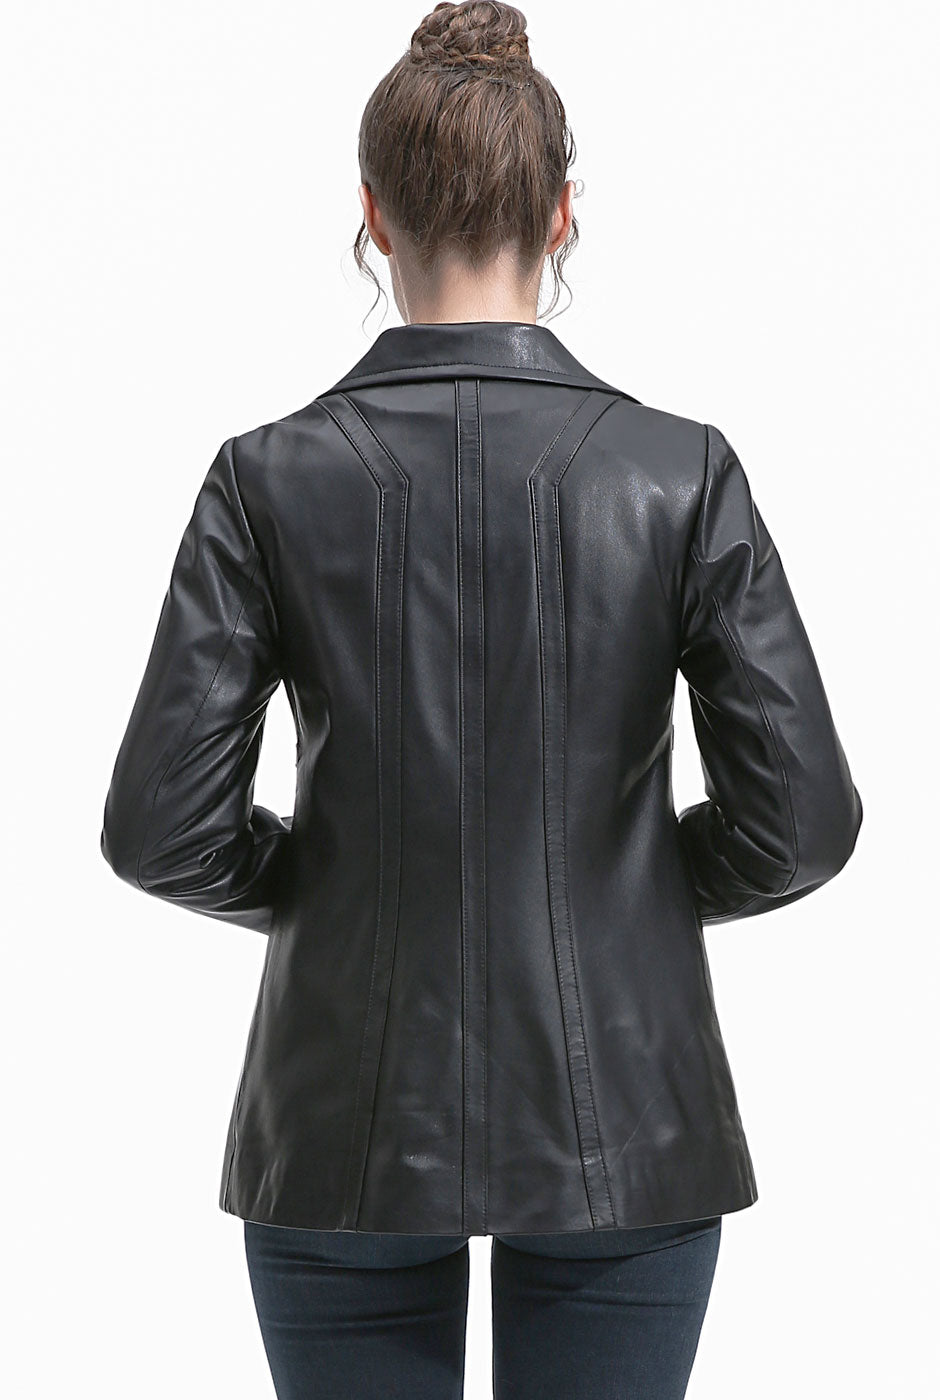 BGSD Women Pearl Lambskin Leather Jacket